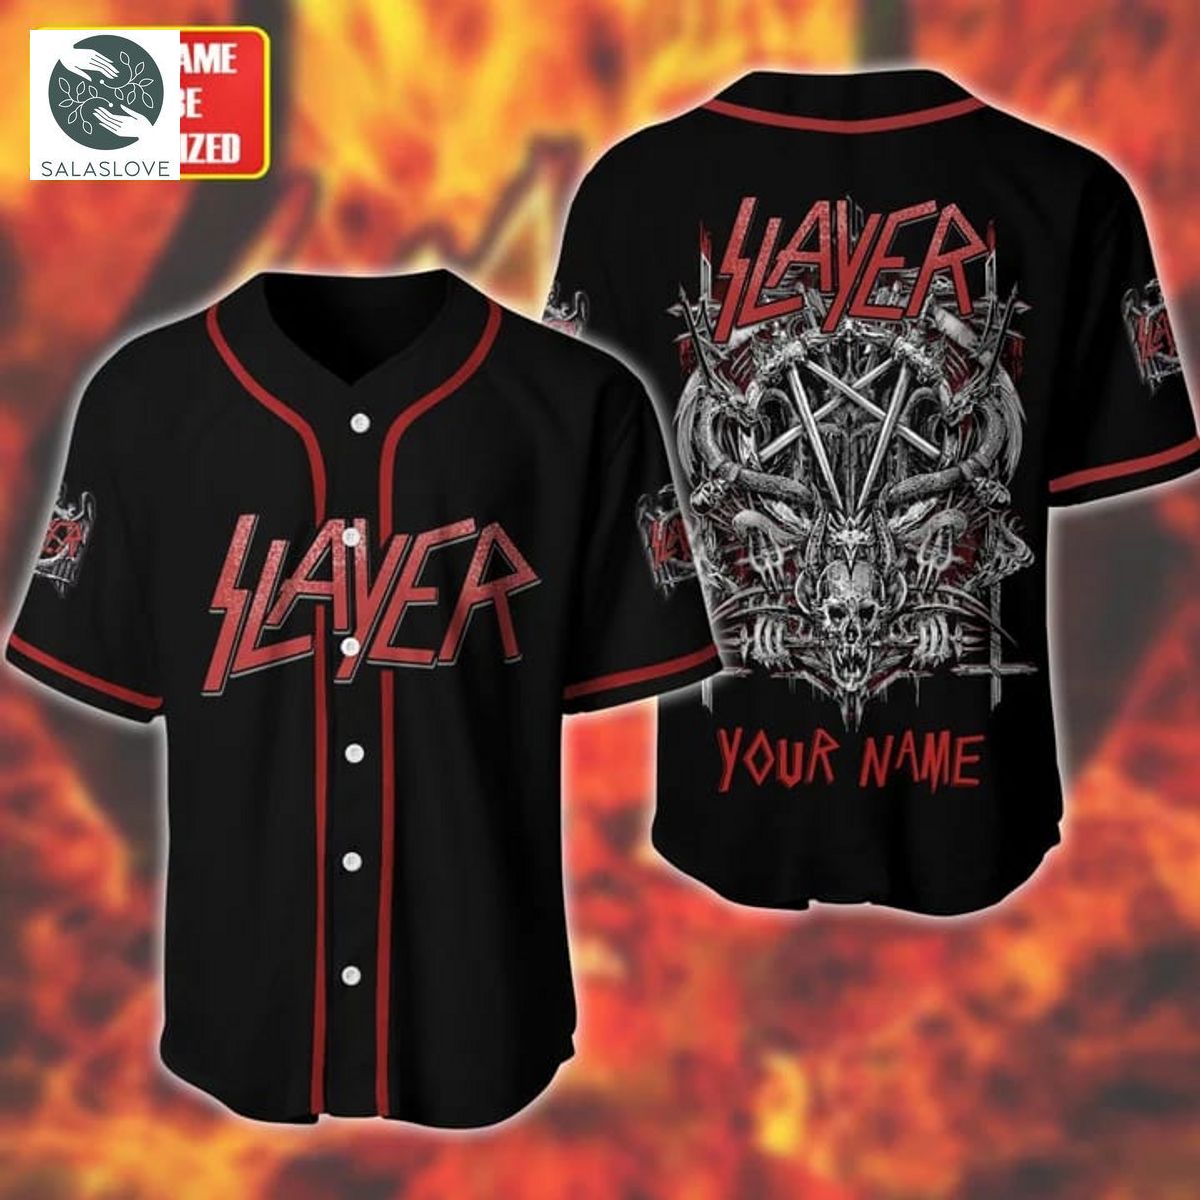 Personalized Slayer Baseball Jersey Shirt TY29624